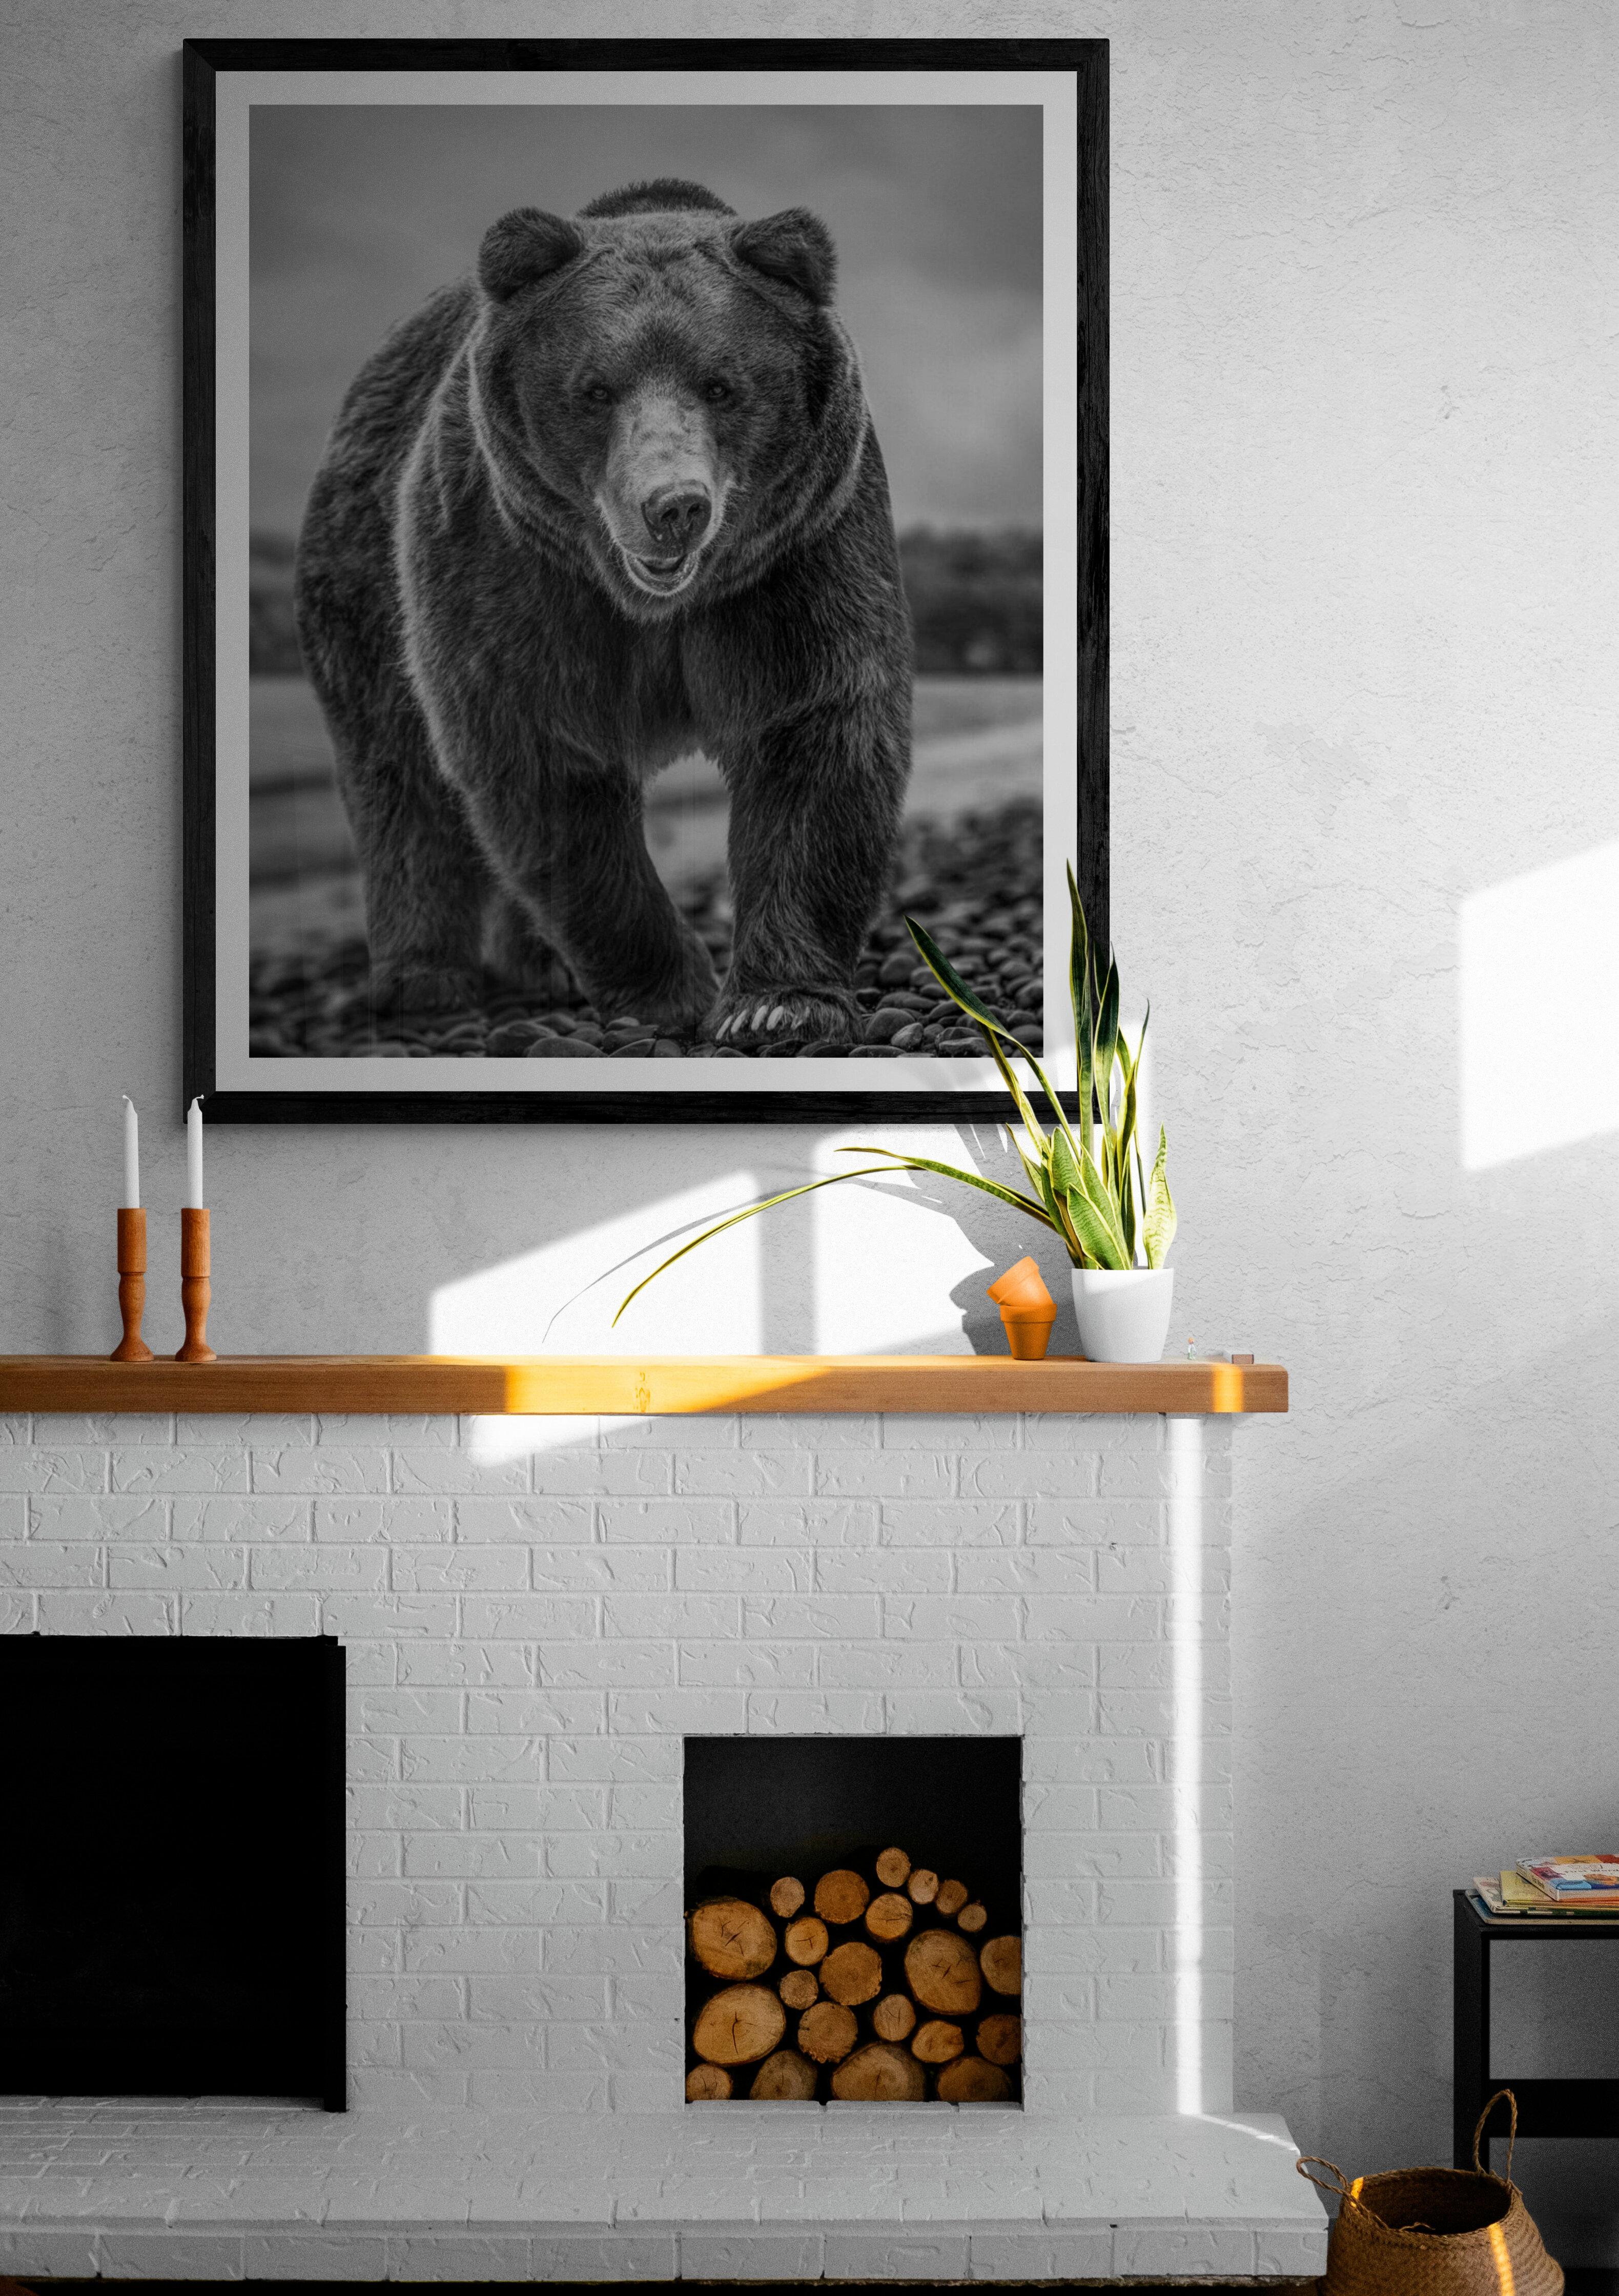 Il s'agit d'une photographie contemporaine d'un ours brun.  
Ceci a été tourné sur l'île de Kodiak en 2019. 
Papier pigmentaire d'archivage 
Encres d'archivage
Encadrement disponible. Renseignez-vous sur les tarifs. 


Shane Russeck s'est forgé une